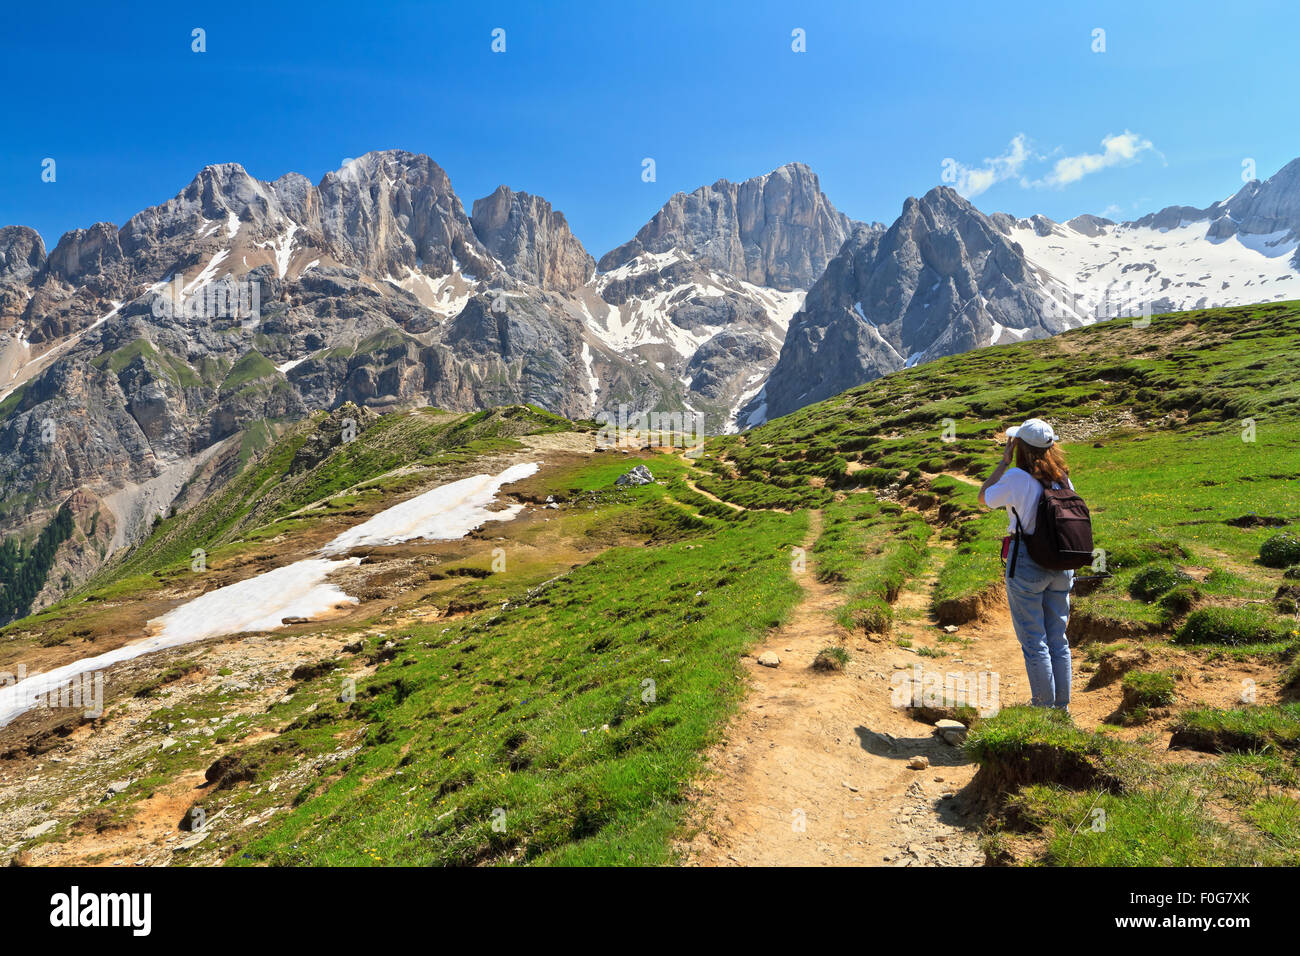 Randonneur sur sentier dans la vallée de Flora alpina, Trentino, en Italie. Arrière-plan sur le mont Marmolada Banque D'Images